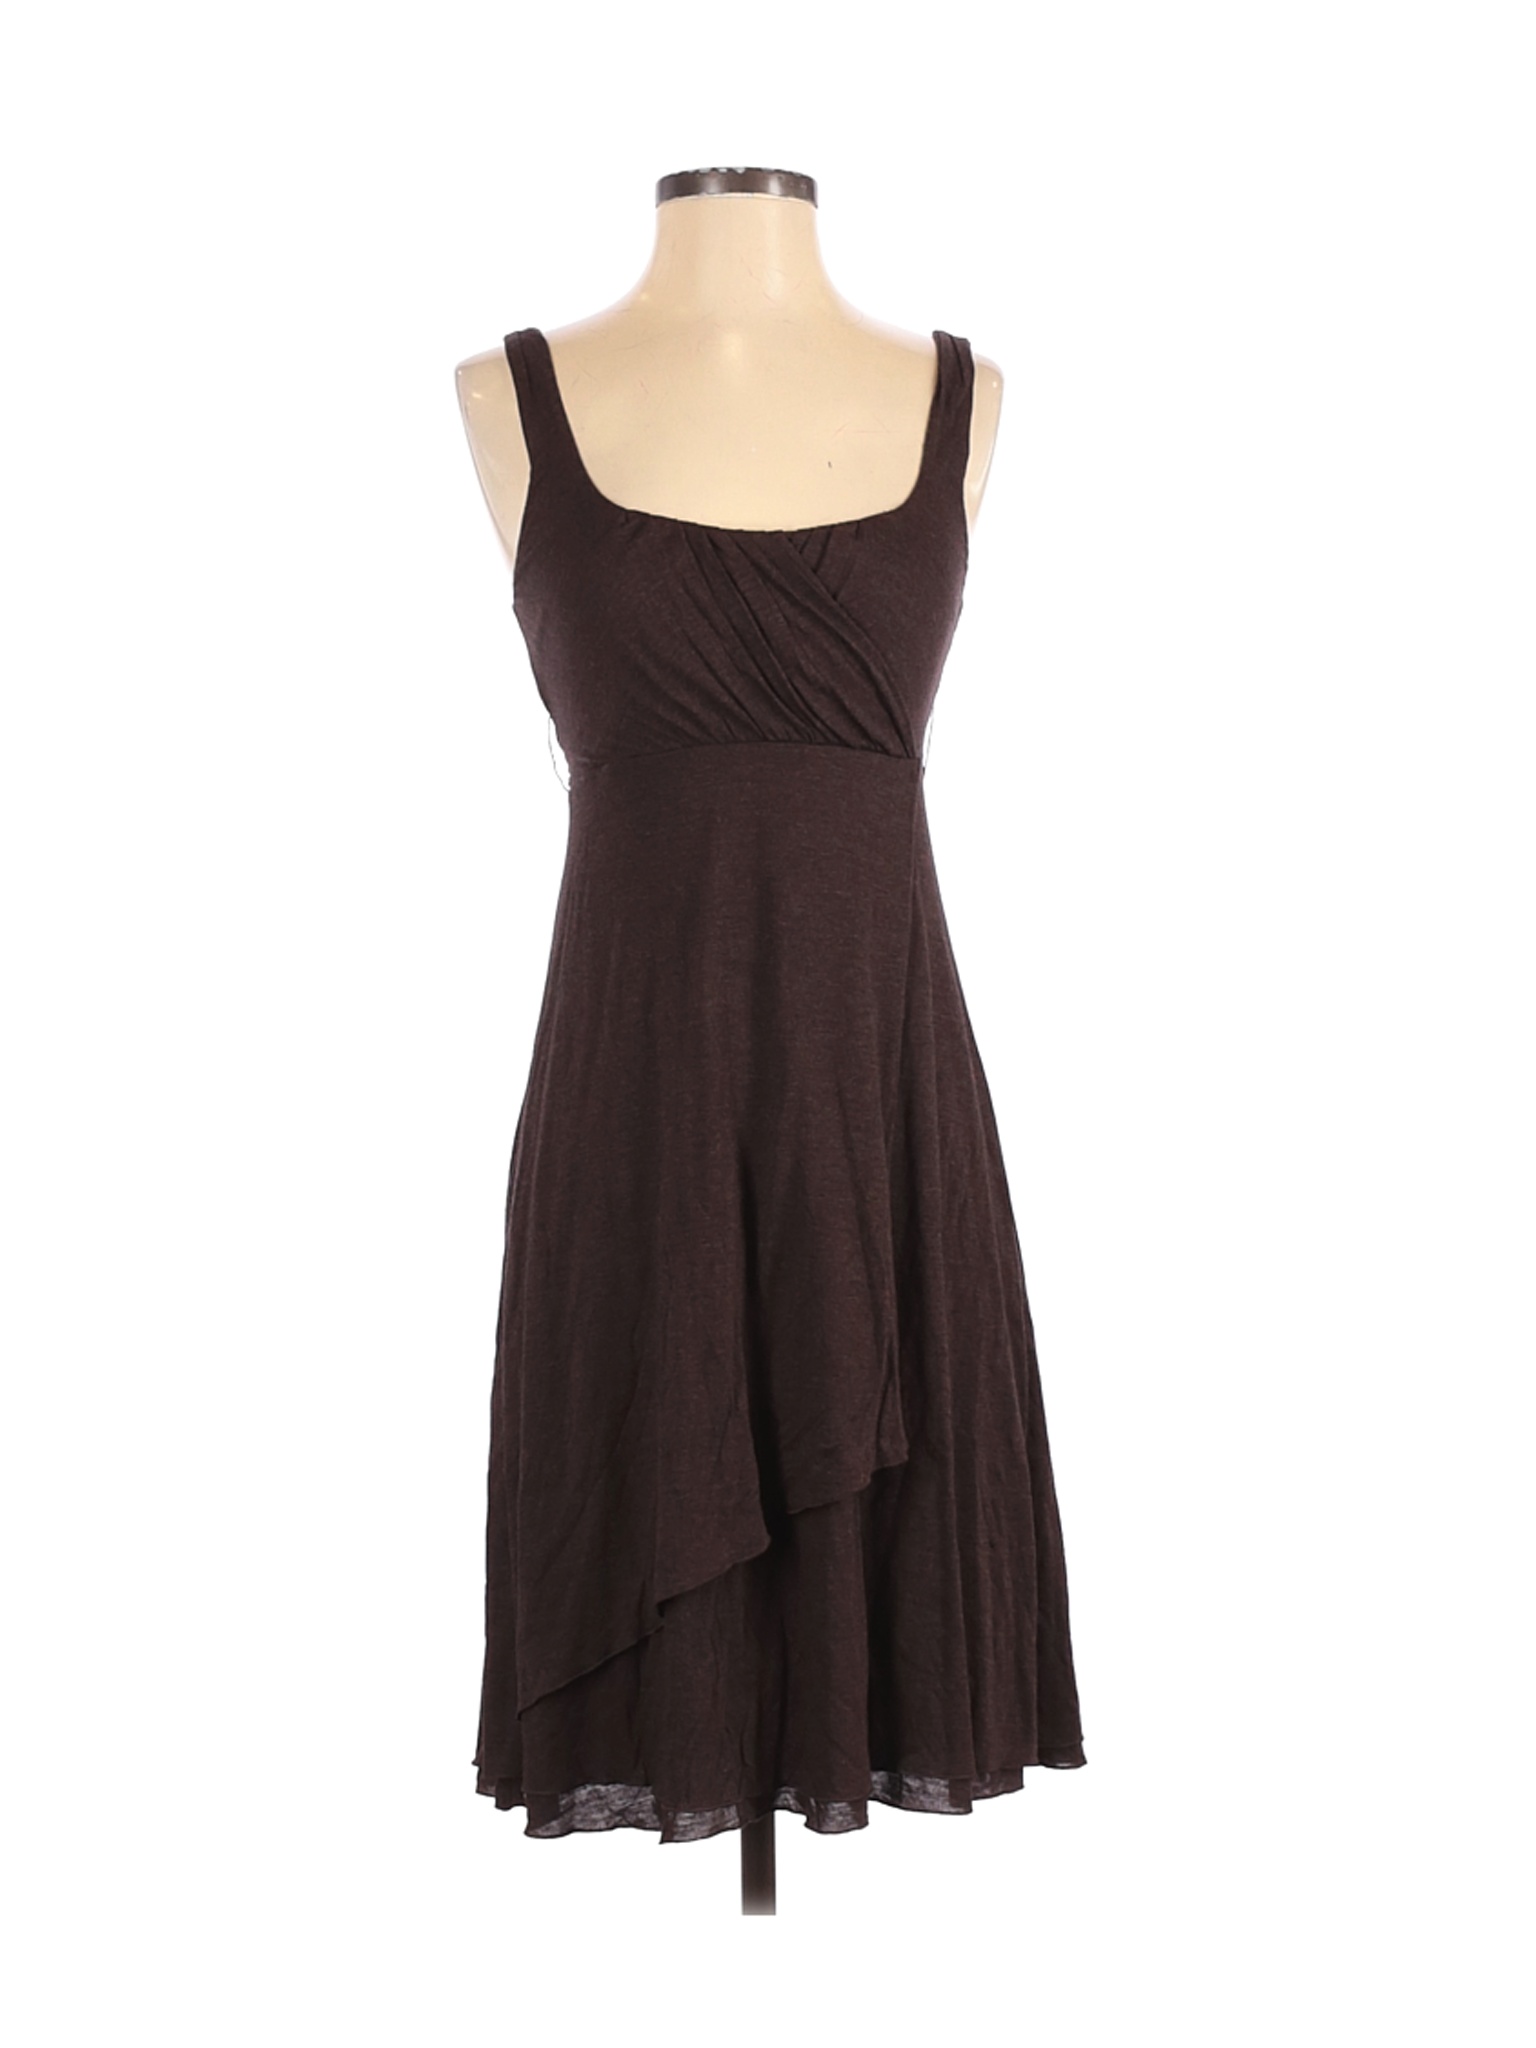 Banana Republic Women Brown Casual Dress XS | eBay